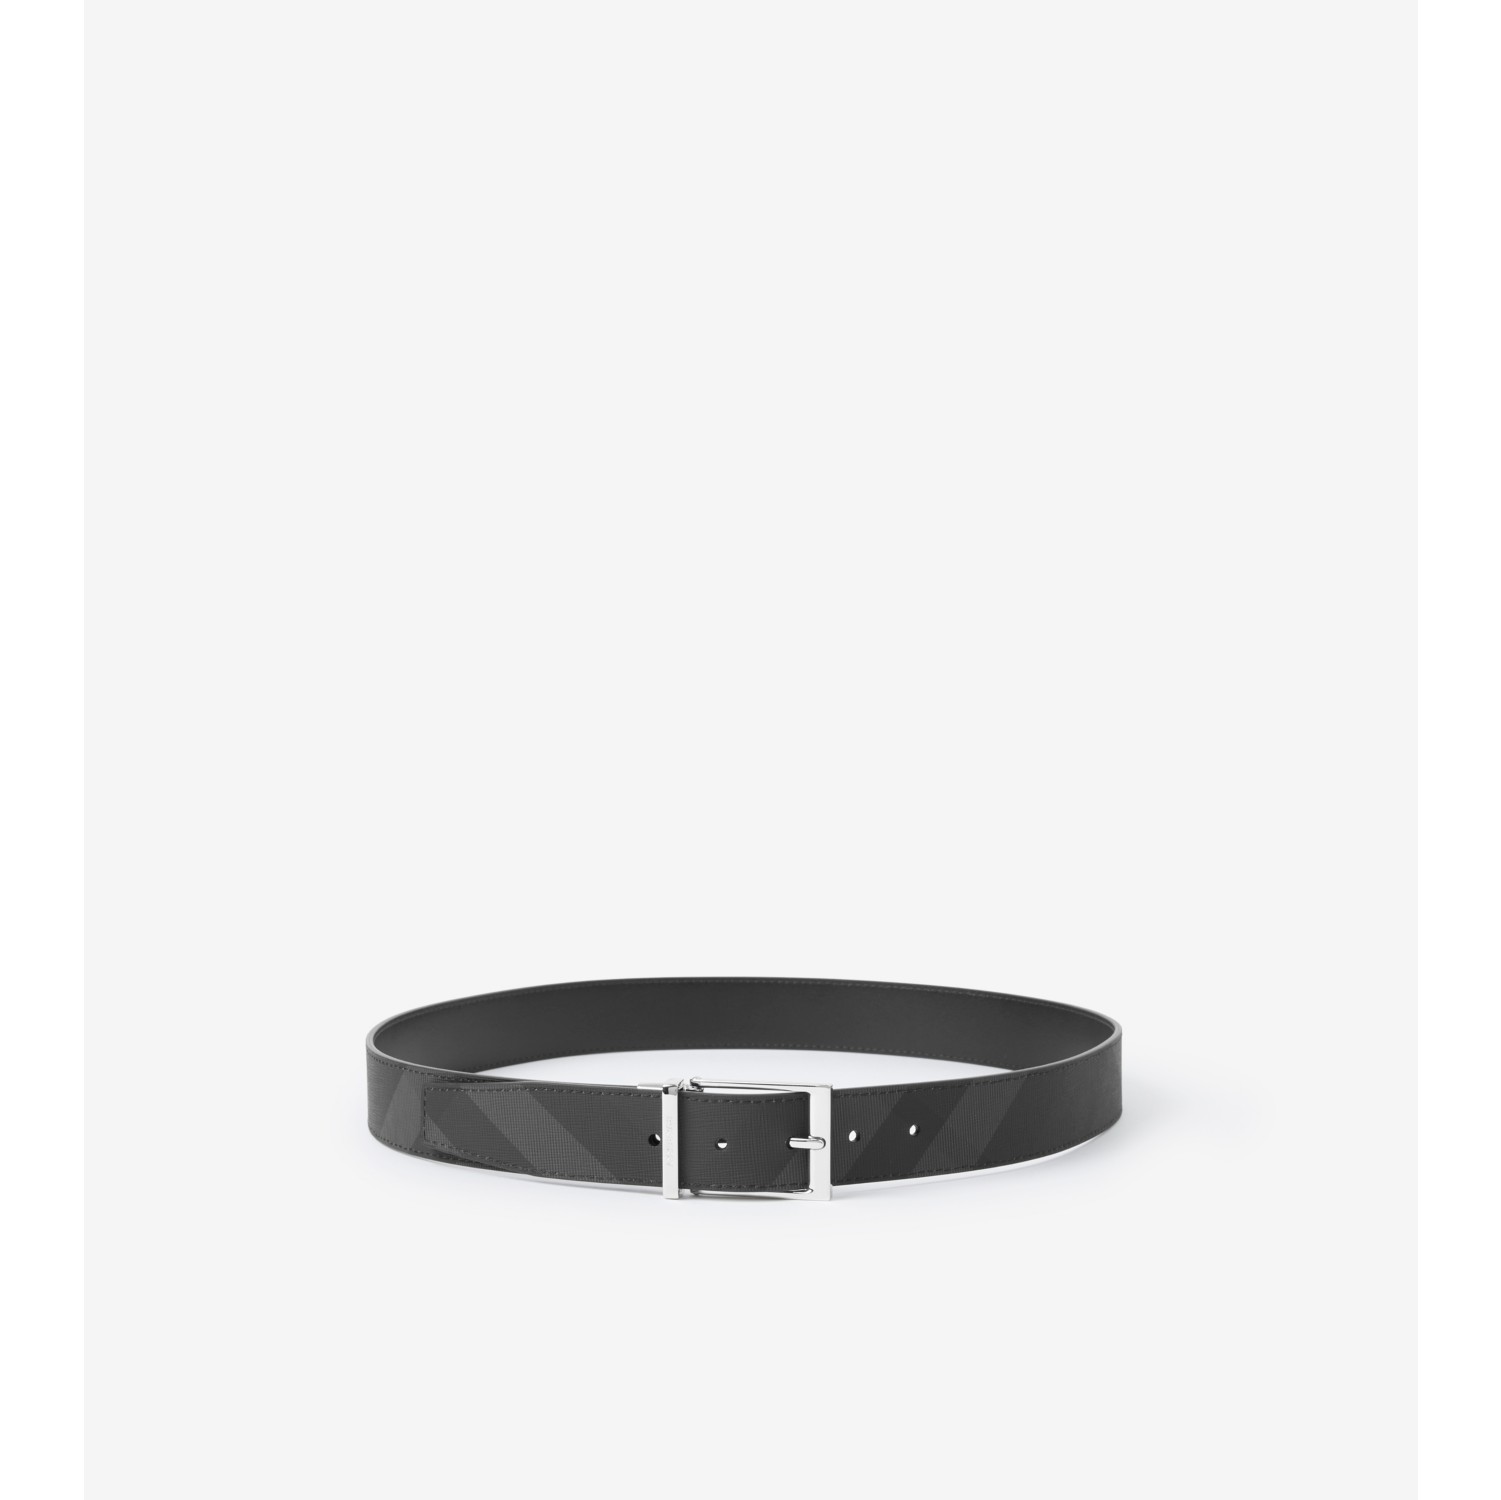 Louis Vuitton LV Circle 35mm Reversible Belt Black + Cowhide. Size 100 cm